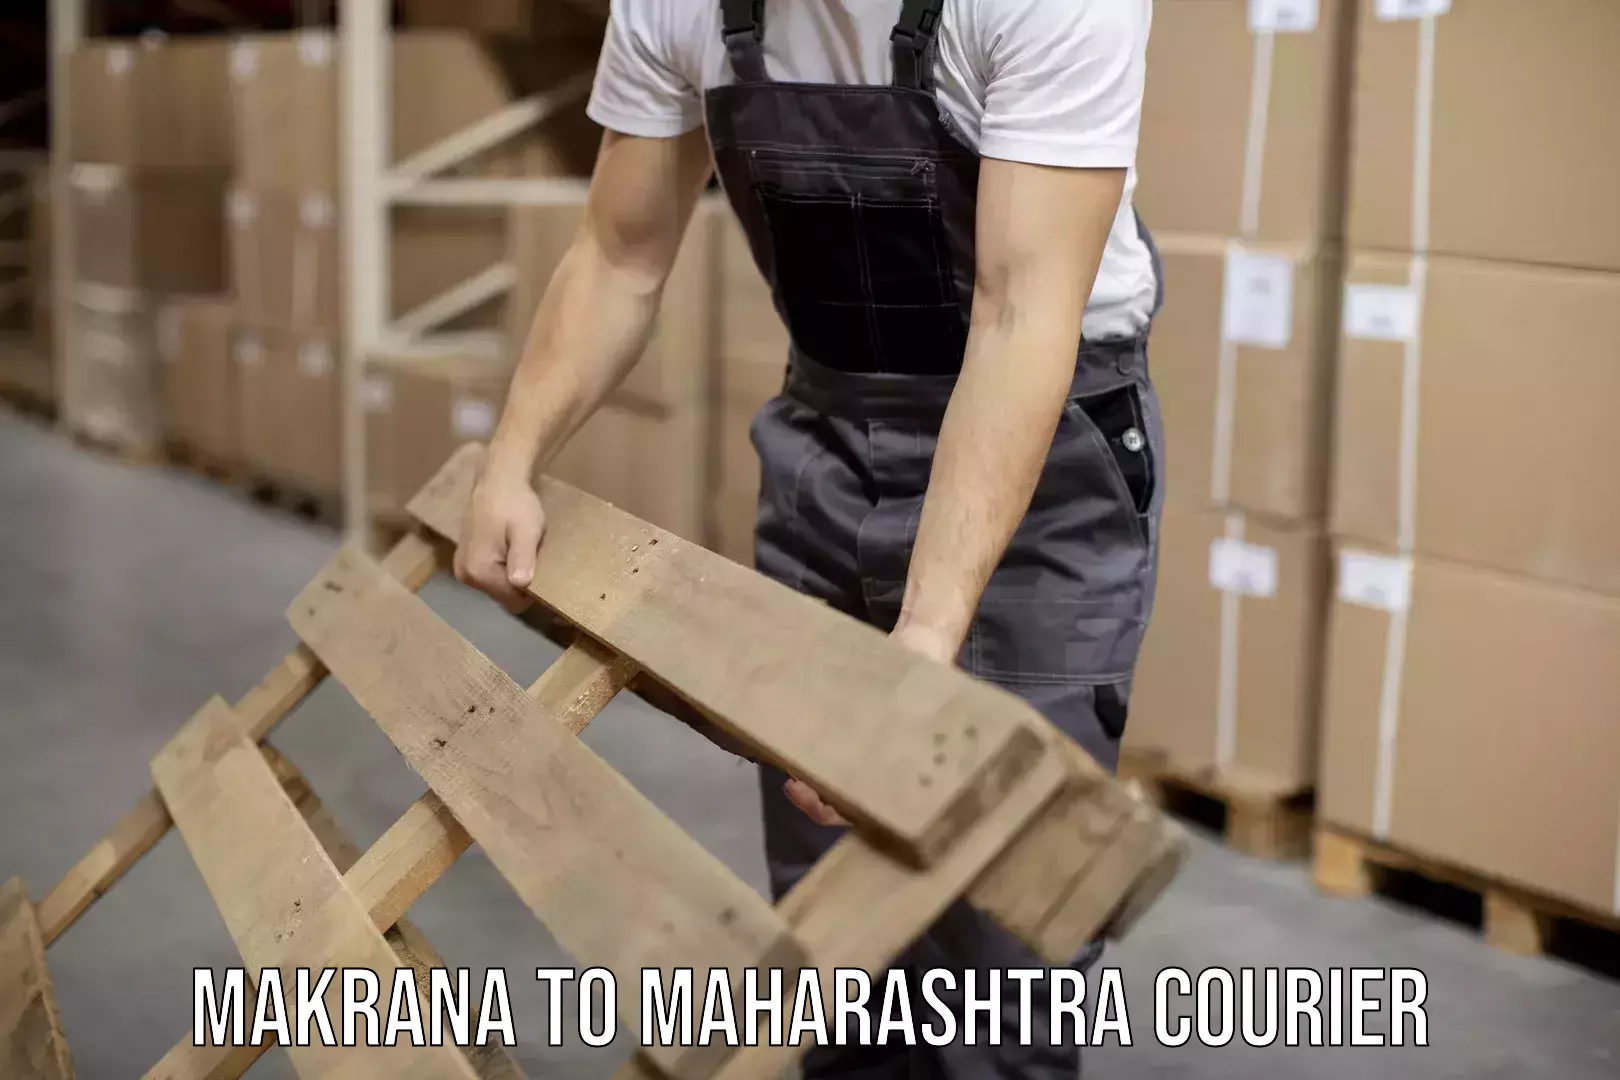 Urgent courier needs in Makrana to Maharashtra